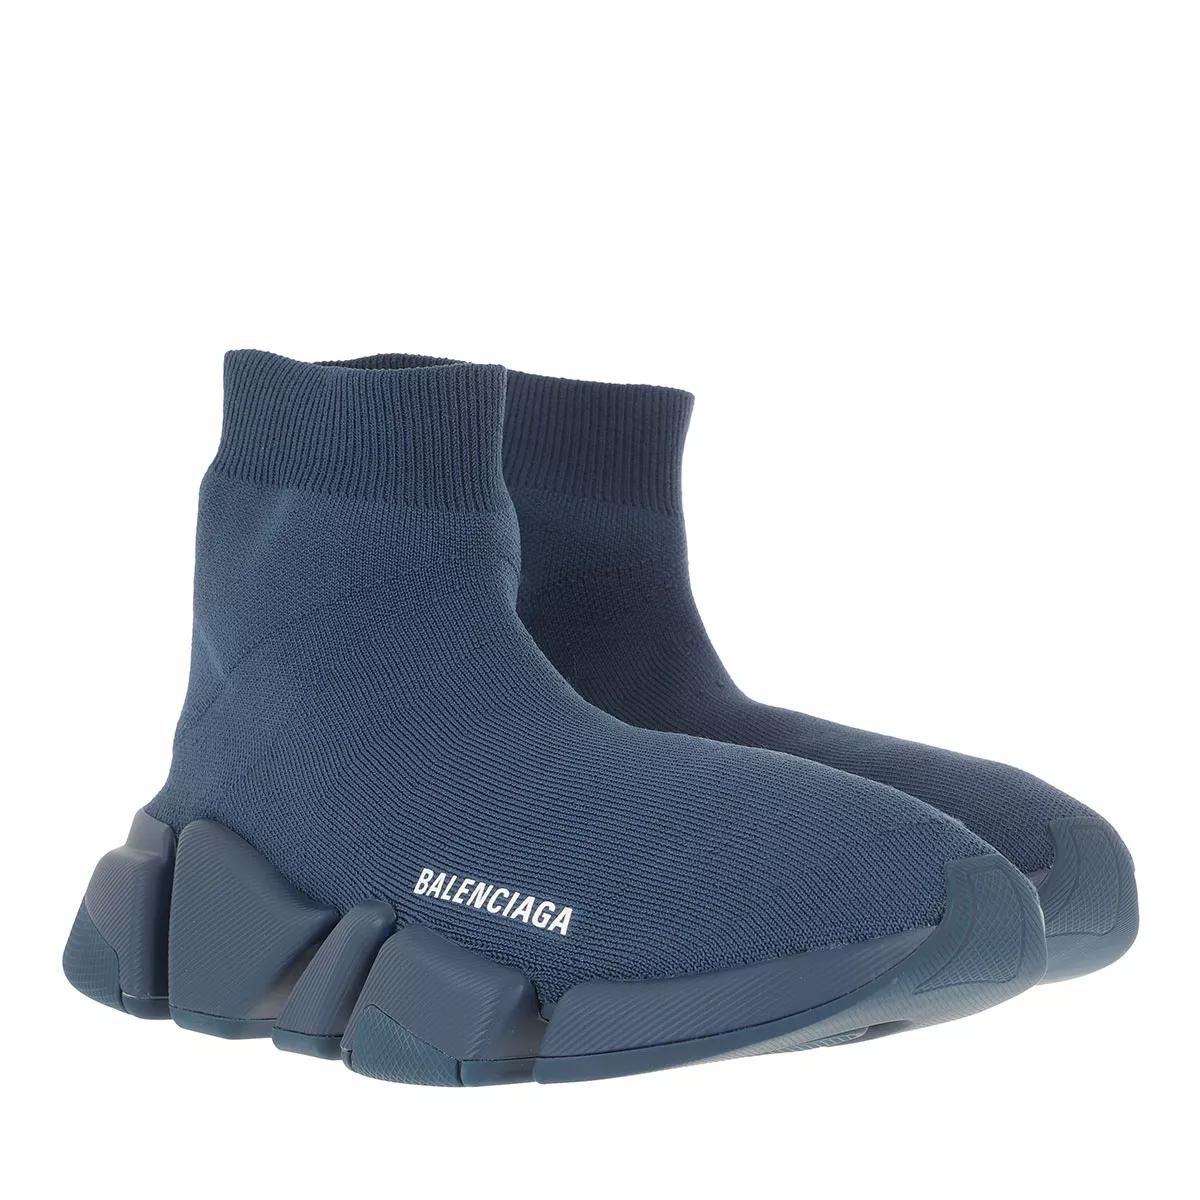 Balenciaga Sneakers - Speed 2.0 Strech Sneakers - Gr. 40 (EU) - in Blau - für Damen von Balenciaga